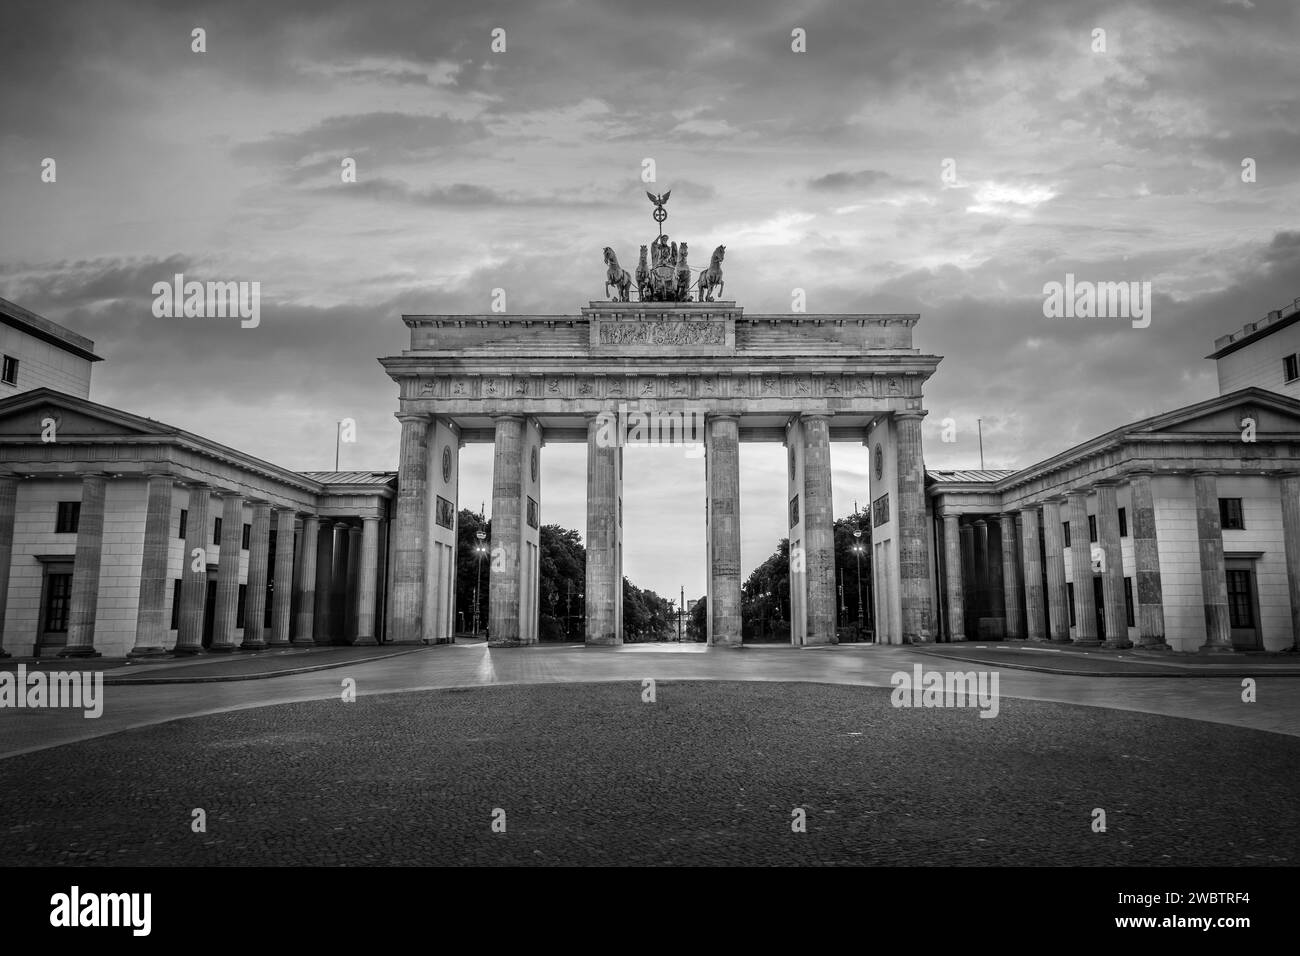 Porte de Brandebourg à Berlin, Allemagne. Photographie en noir et blanc Banque D'Images